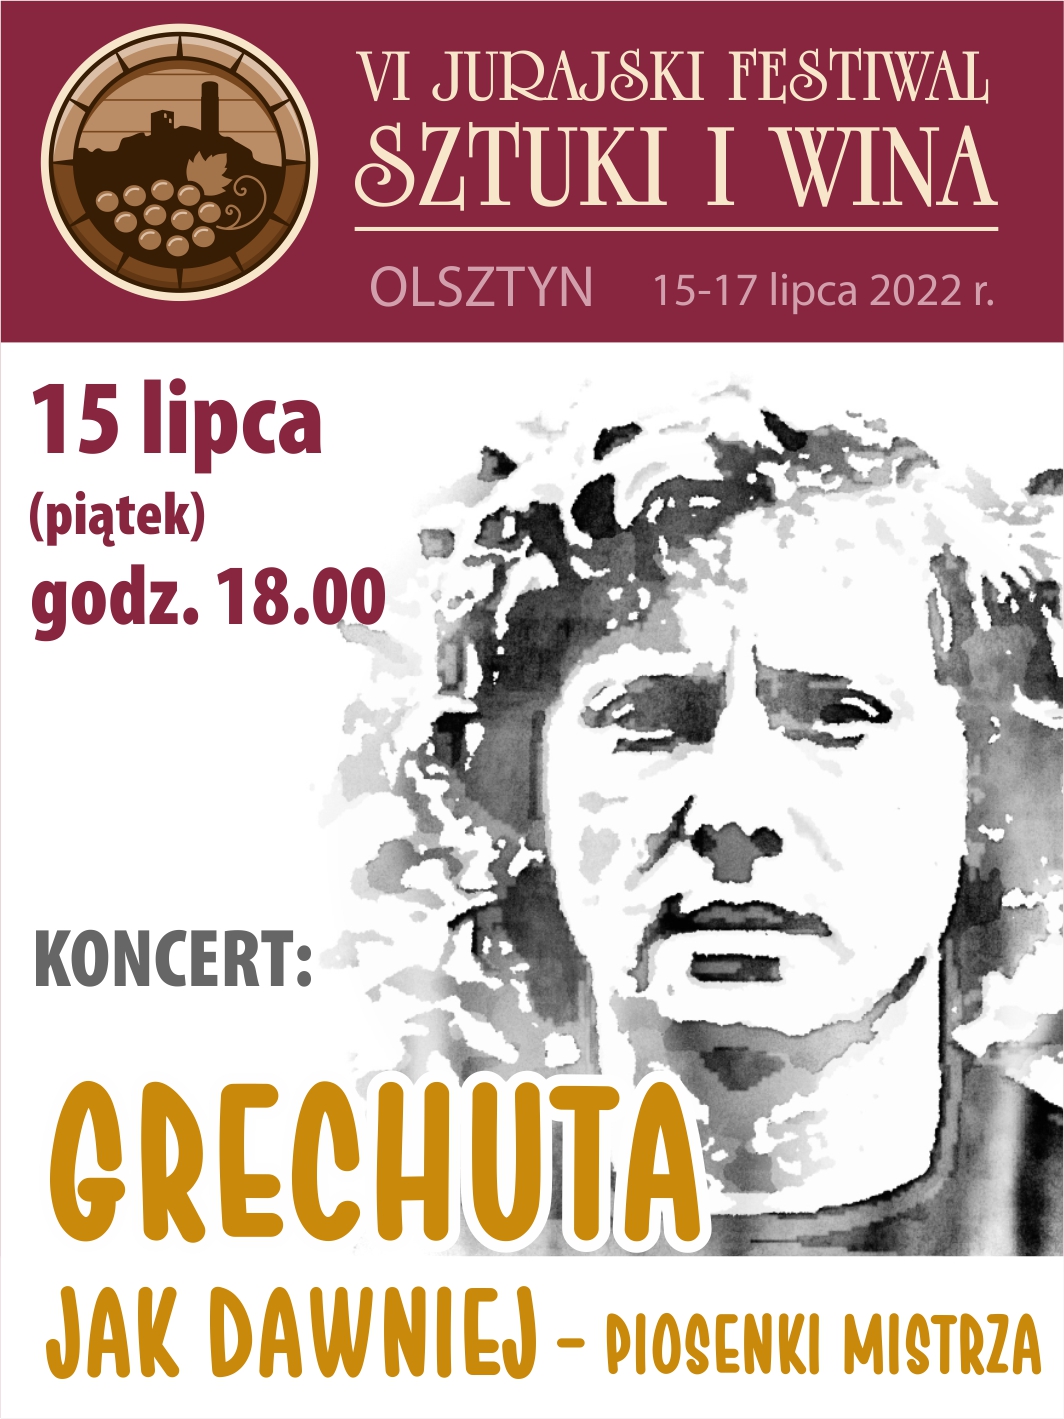 Plakat zaprasza na koncert Grechuta - Jak dawniej piosenki Mistrza